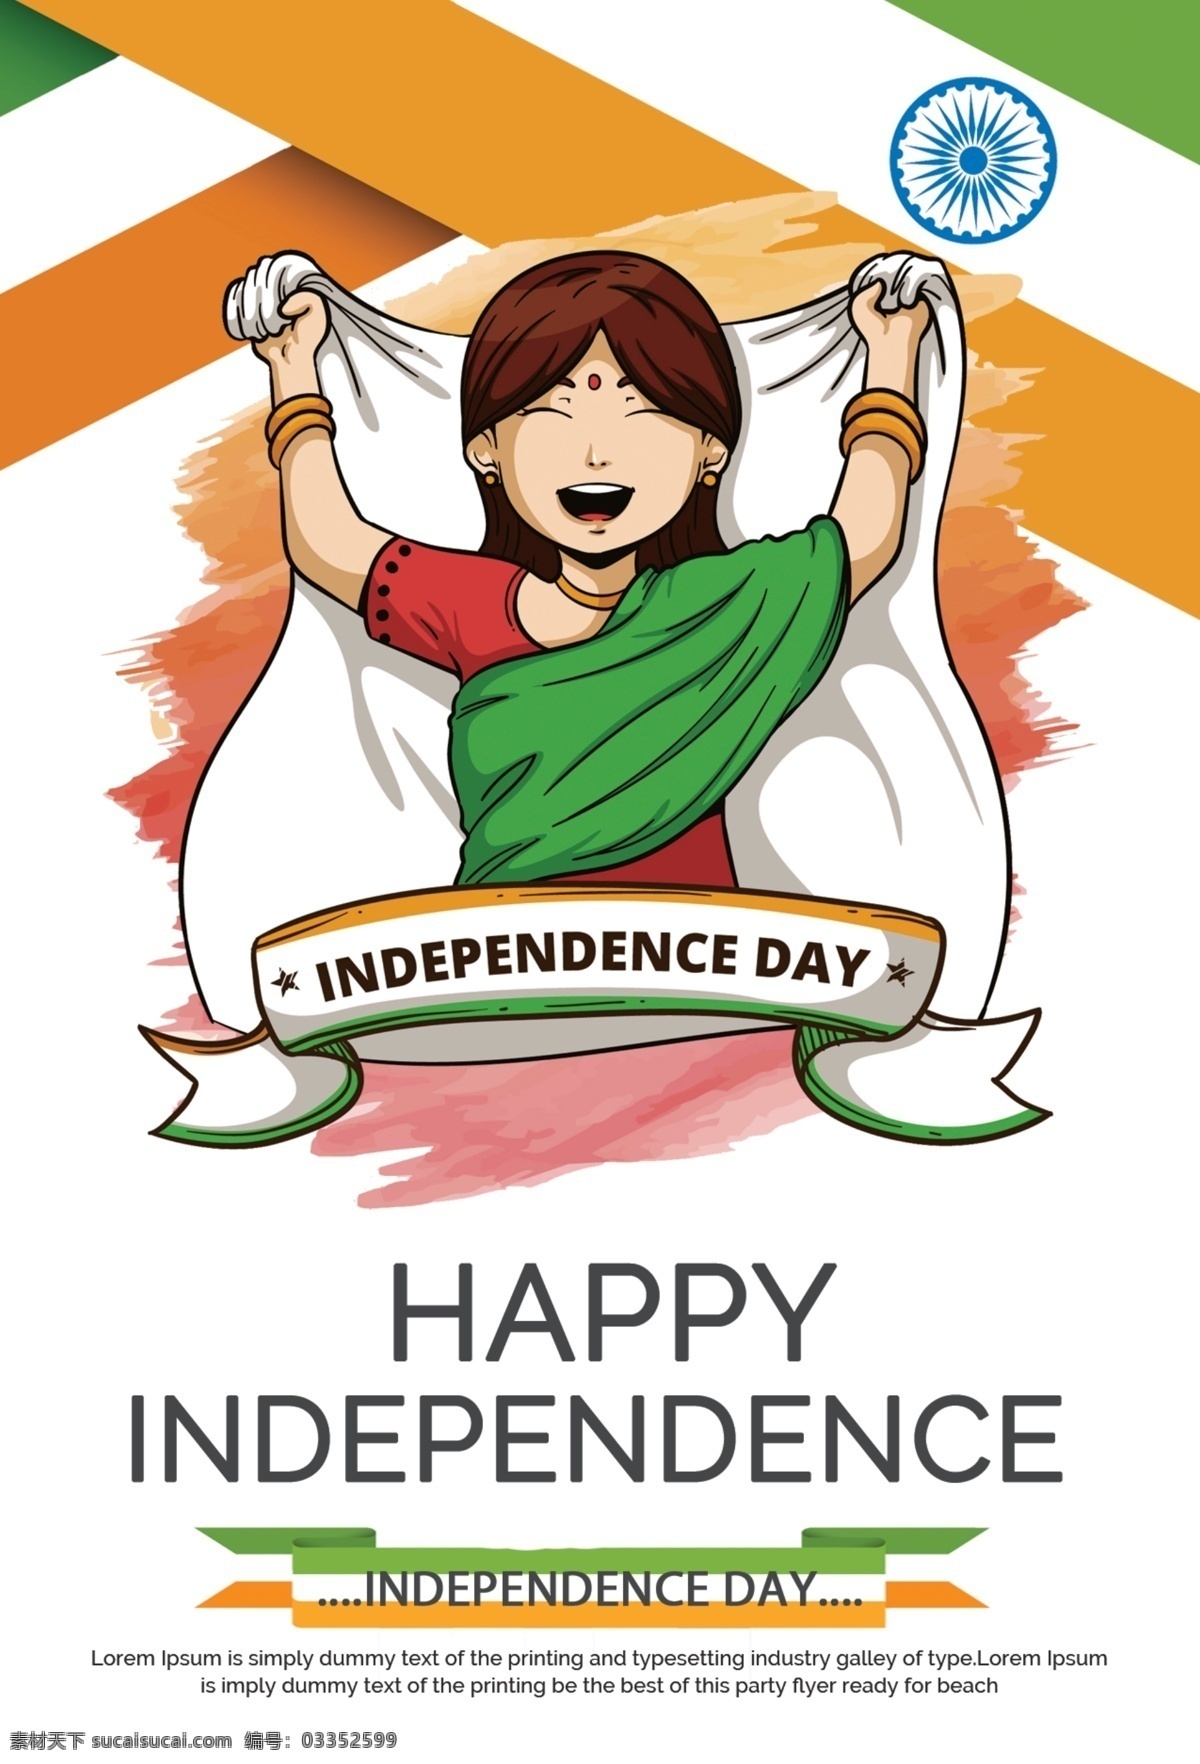 独立日传单 八月 建造 运动 宪法 国家 创作的 天 新德里 民主 民主的 旗 堡 自由 门 荣耀 荣誉 独立 印度 一月 地标 泰姬陵 国民 爱国主义 共和国 强